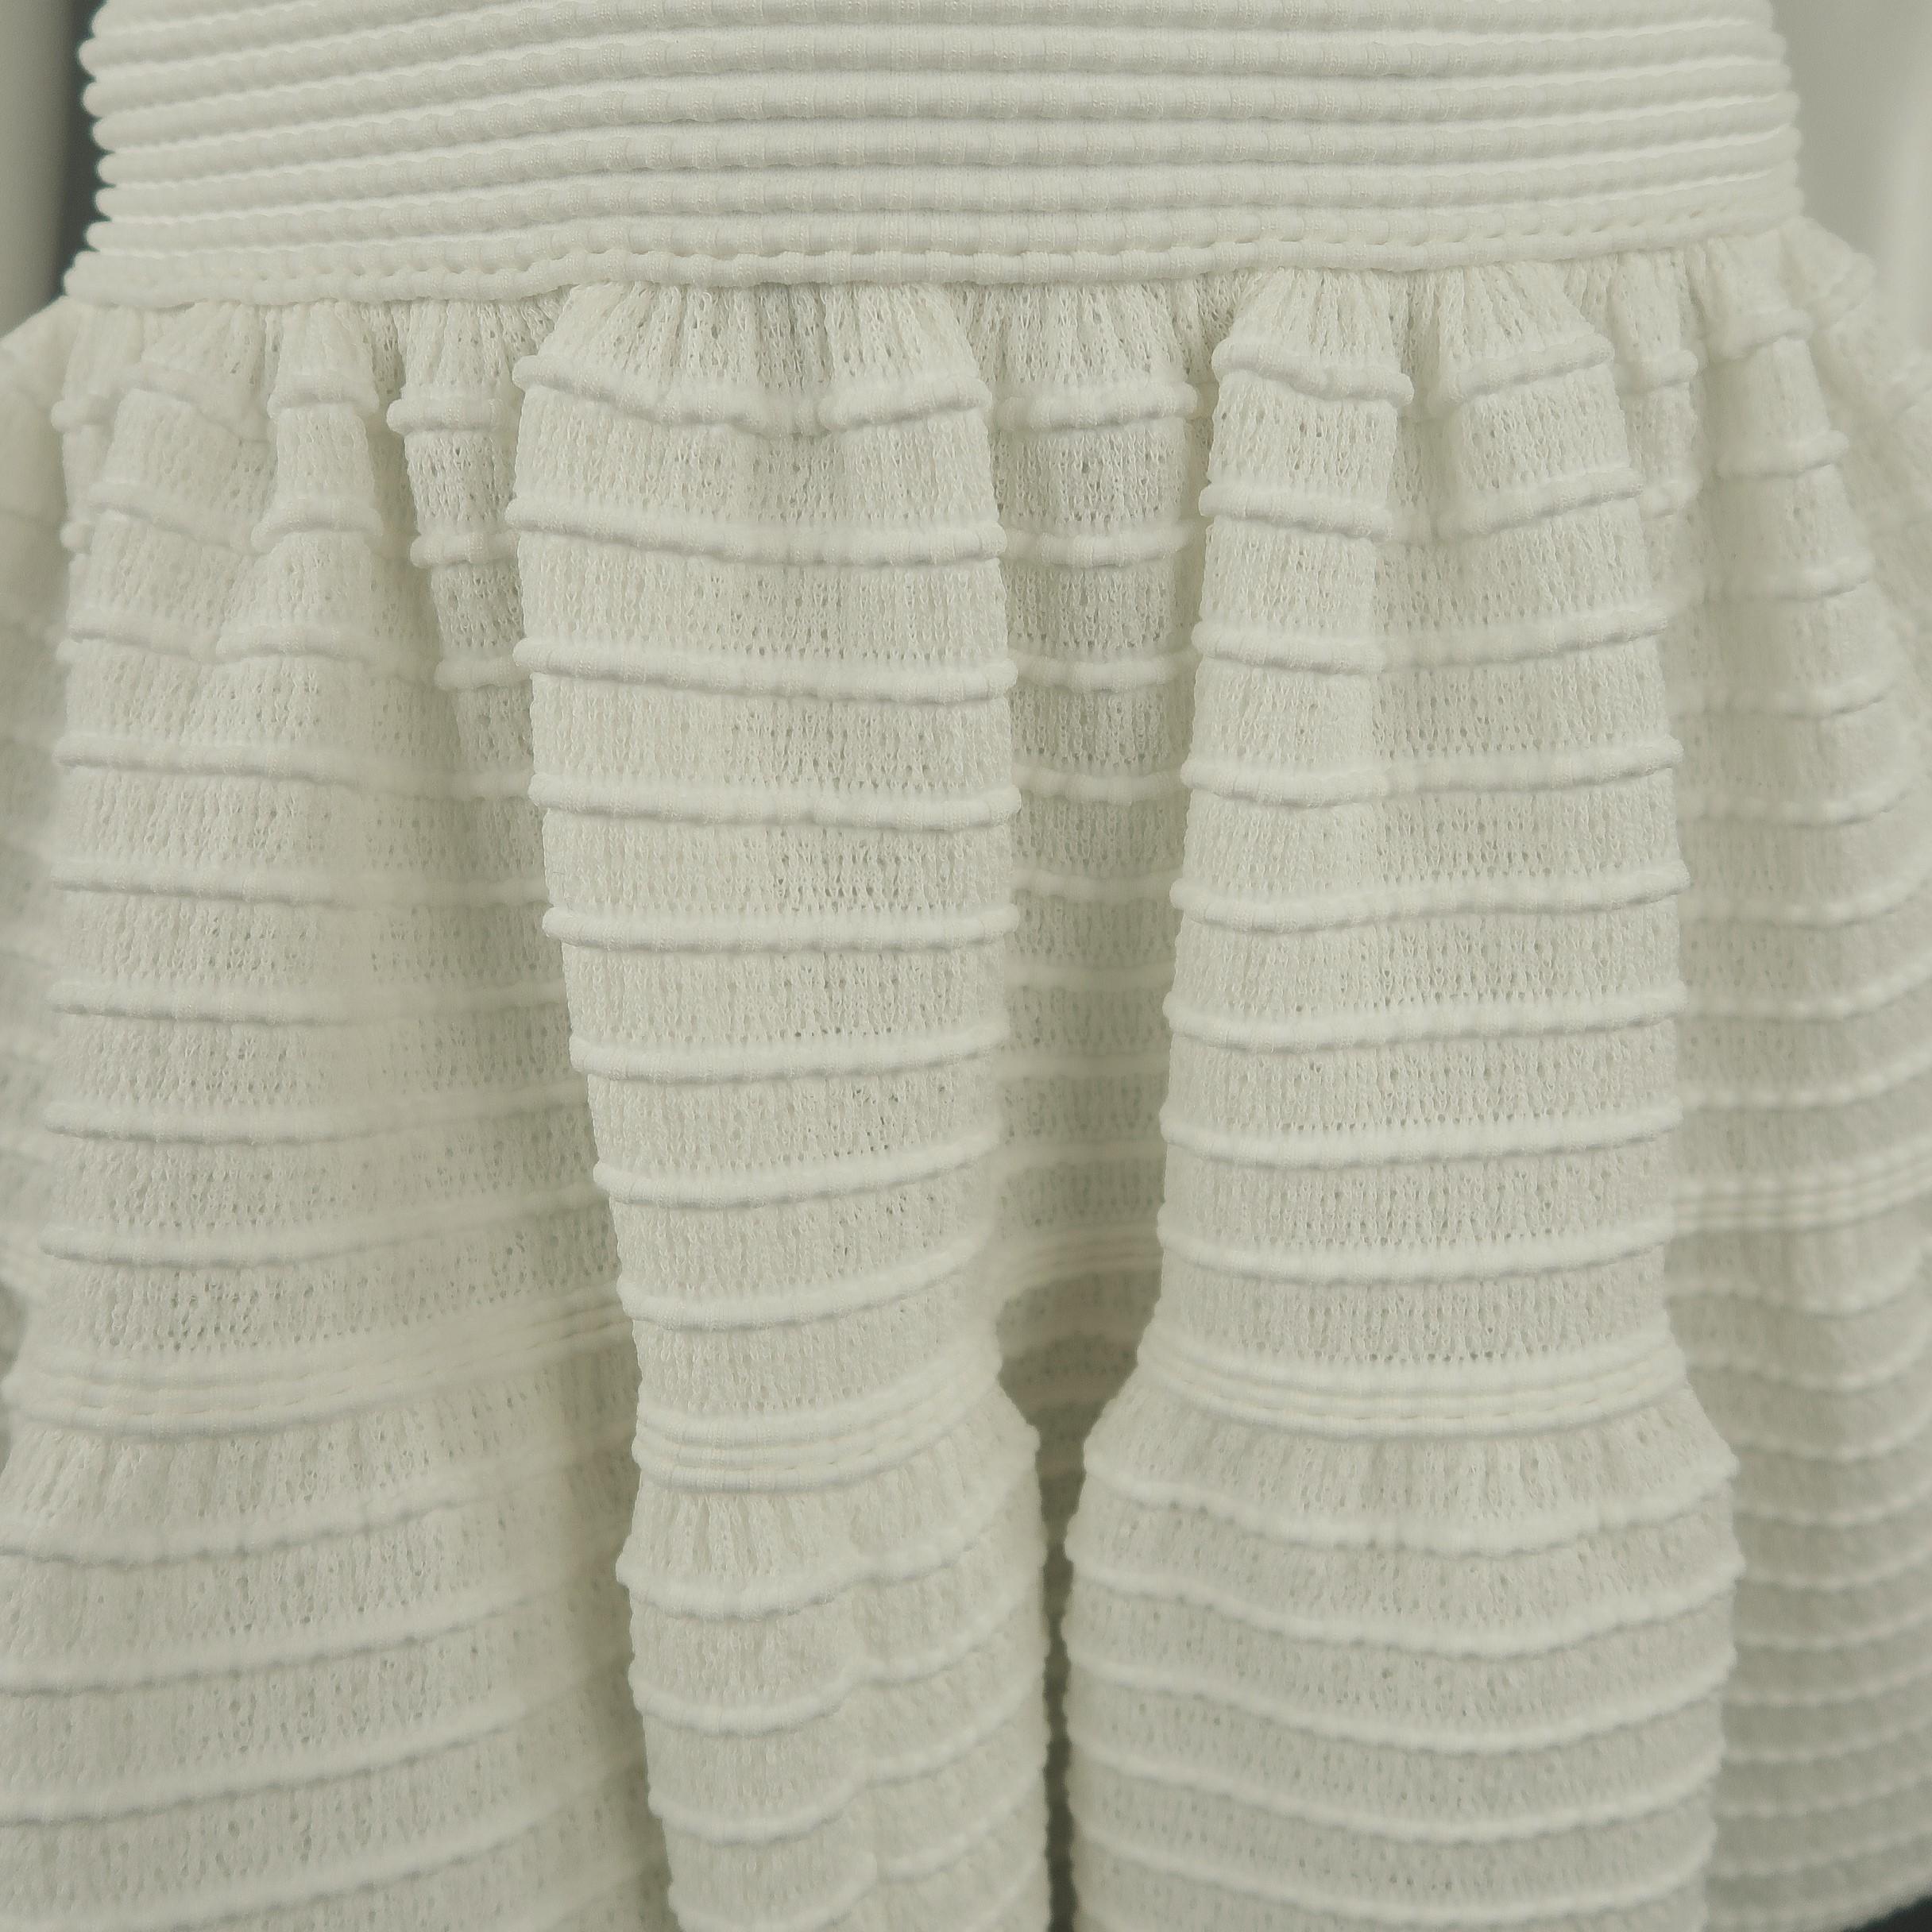 ALAIA Size S White Textured Knit Sleeveless Top & Skirt Set 1